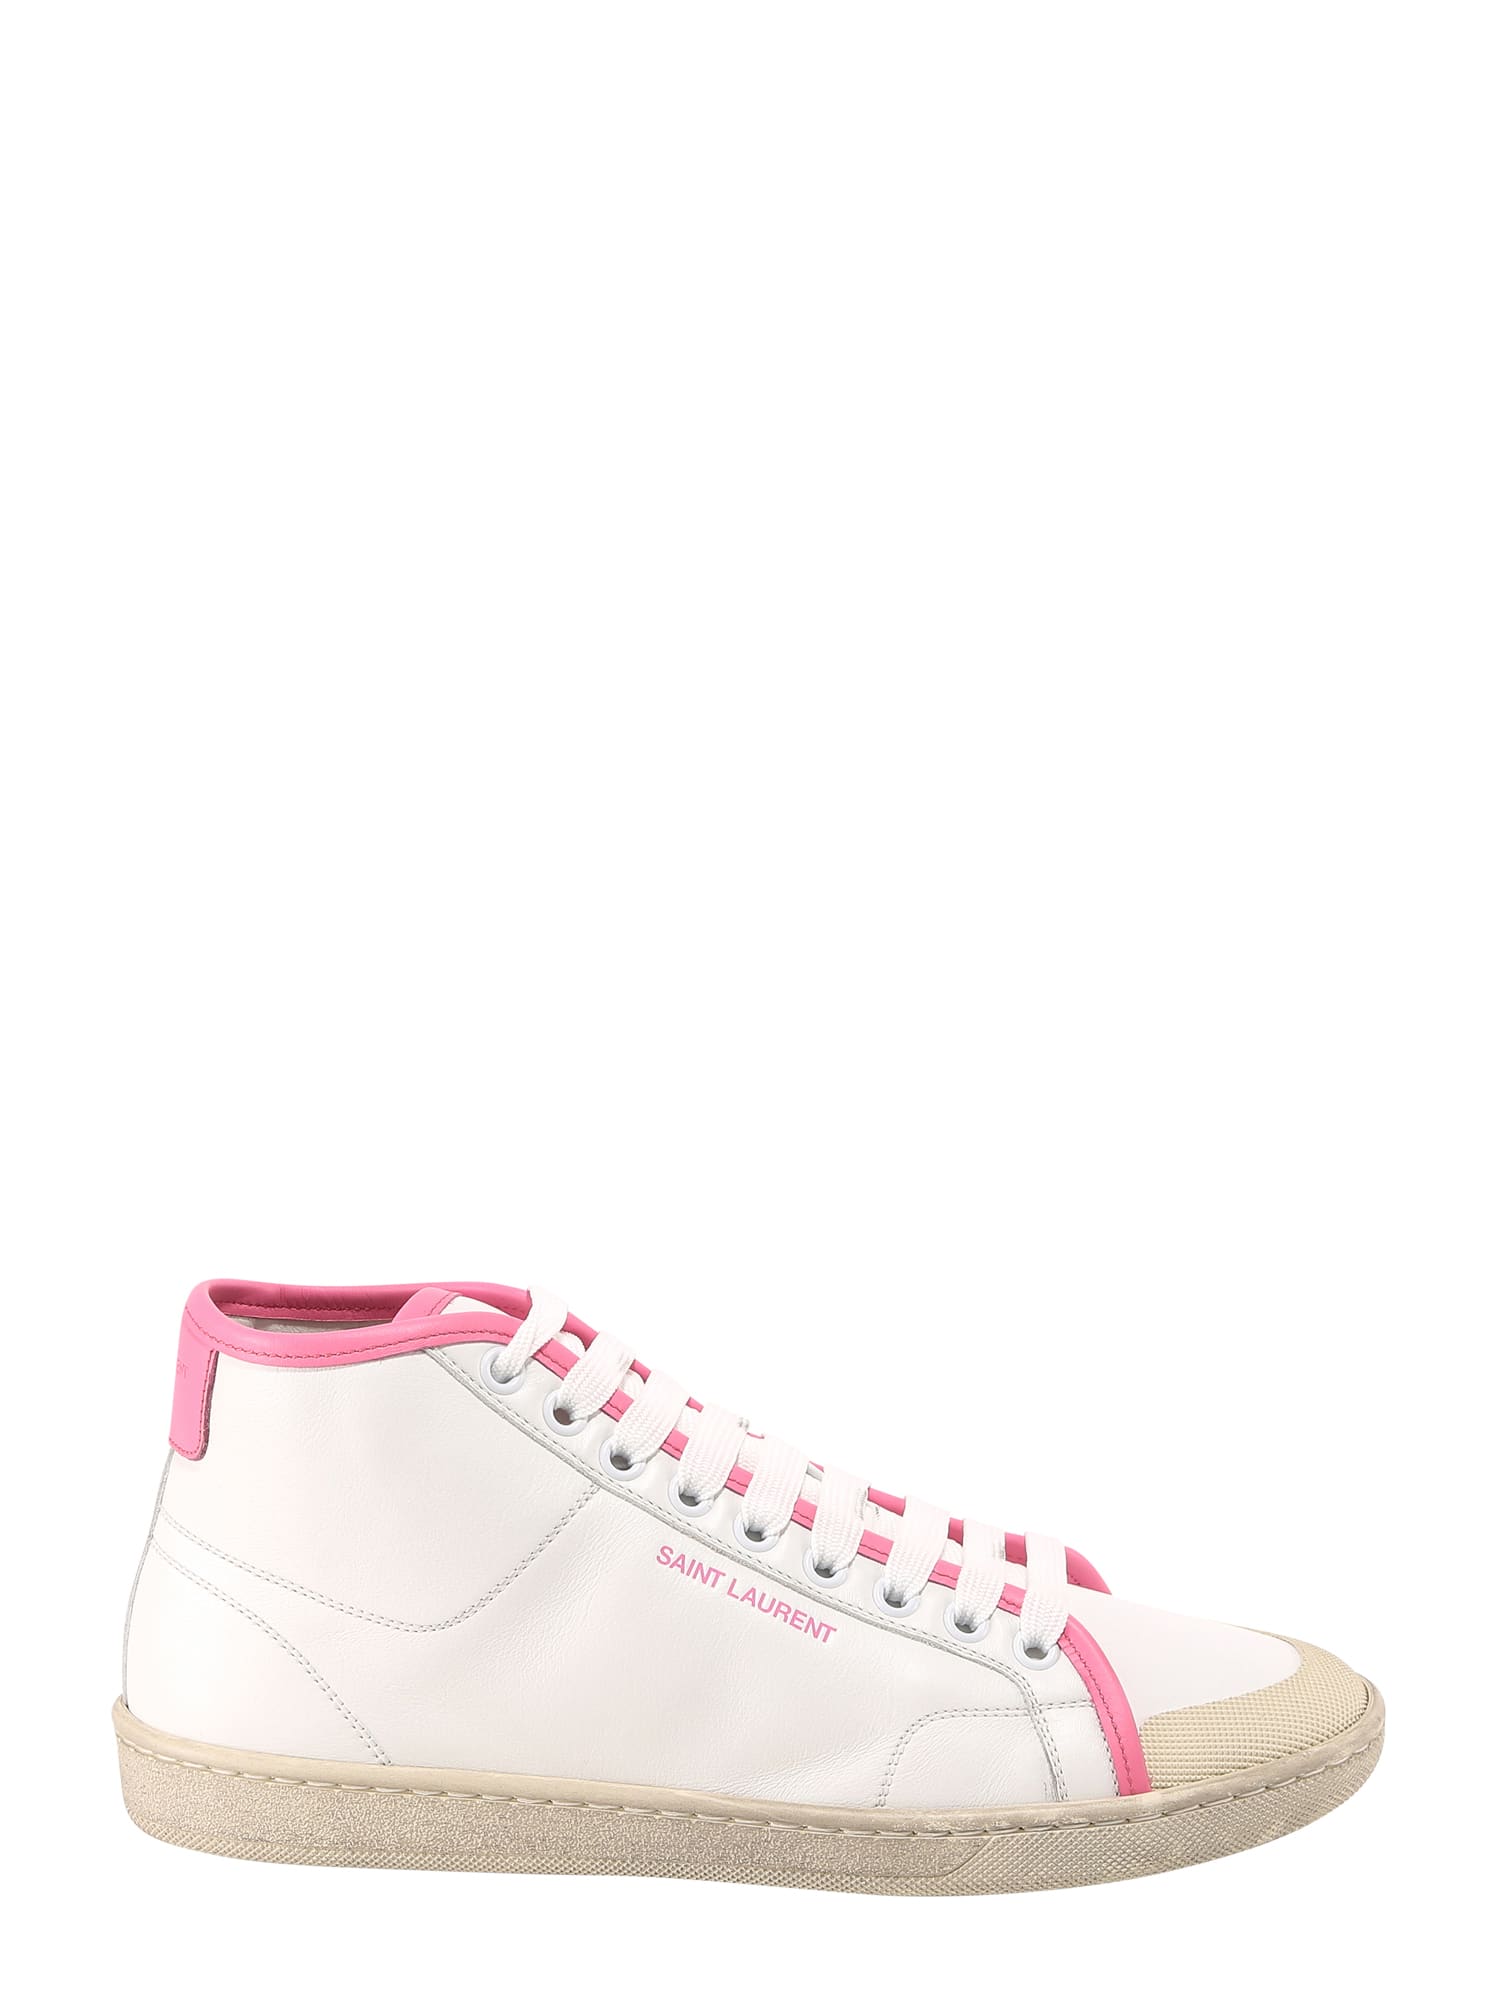 Buy Saint Laurent Sl 39 Sneakers online, shop Saint Laurent shoes with free shipping